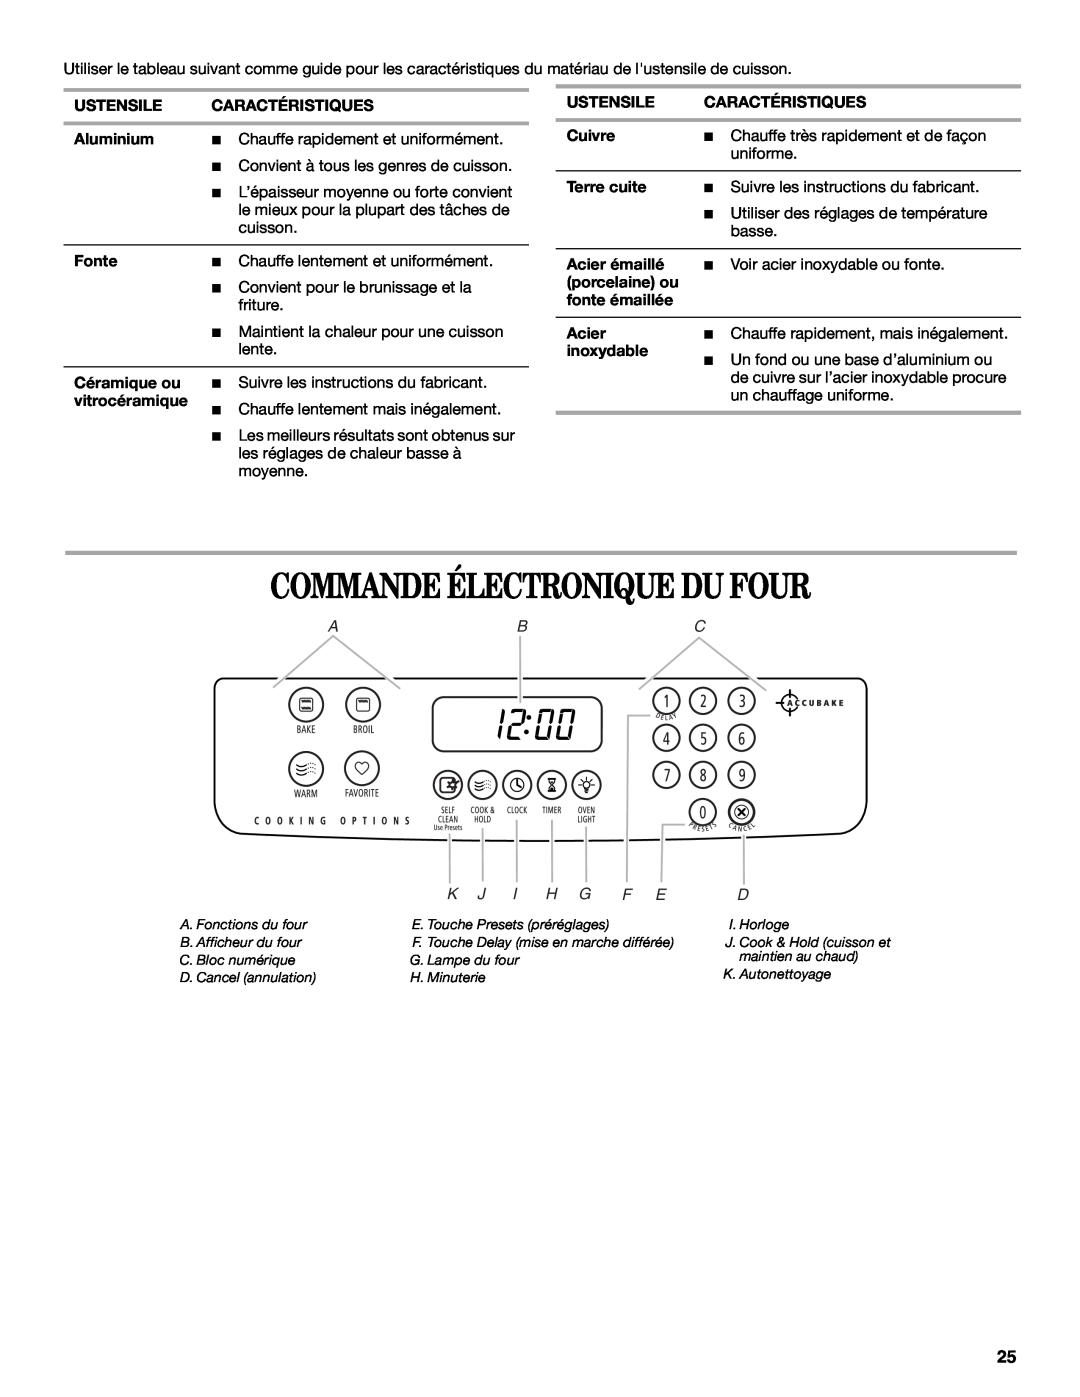 Whirlpool GY399LXUQ manual Commande Électronique Du Four, A. Fonctions du four, B. Afficheur du four, C. Bloc numérique 